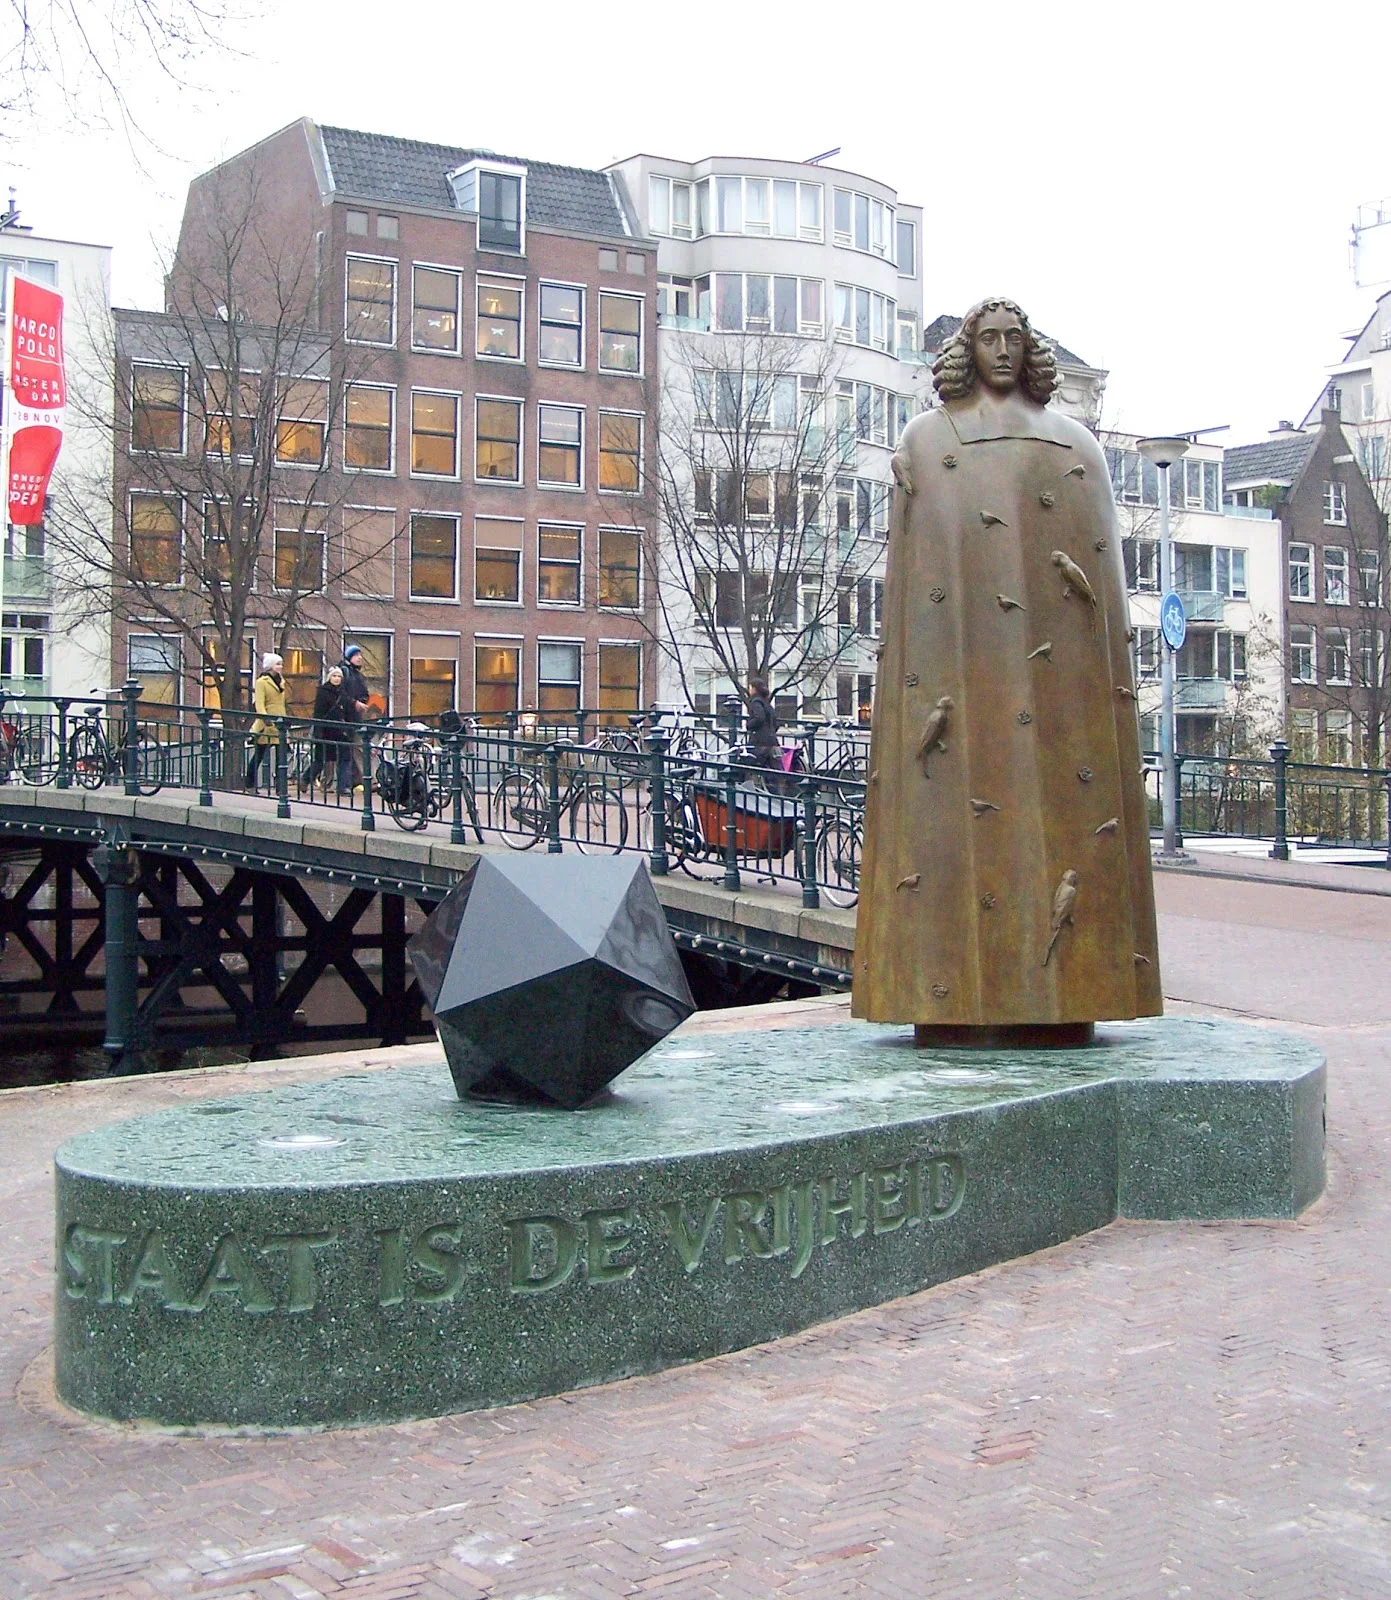 アムステルダムのズワーネンブルグワルのニコラス・ディング作成のバルーフ・デ・スピノザの彫像